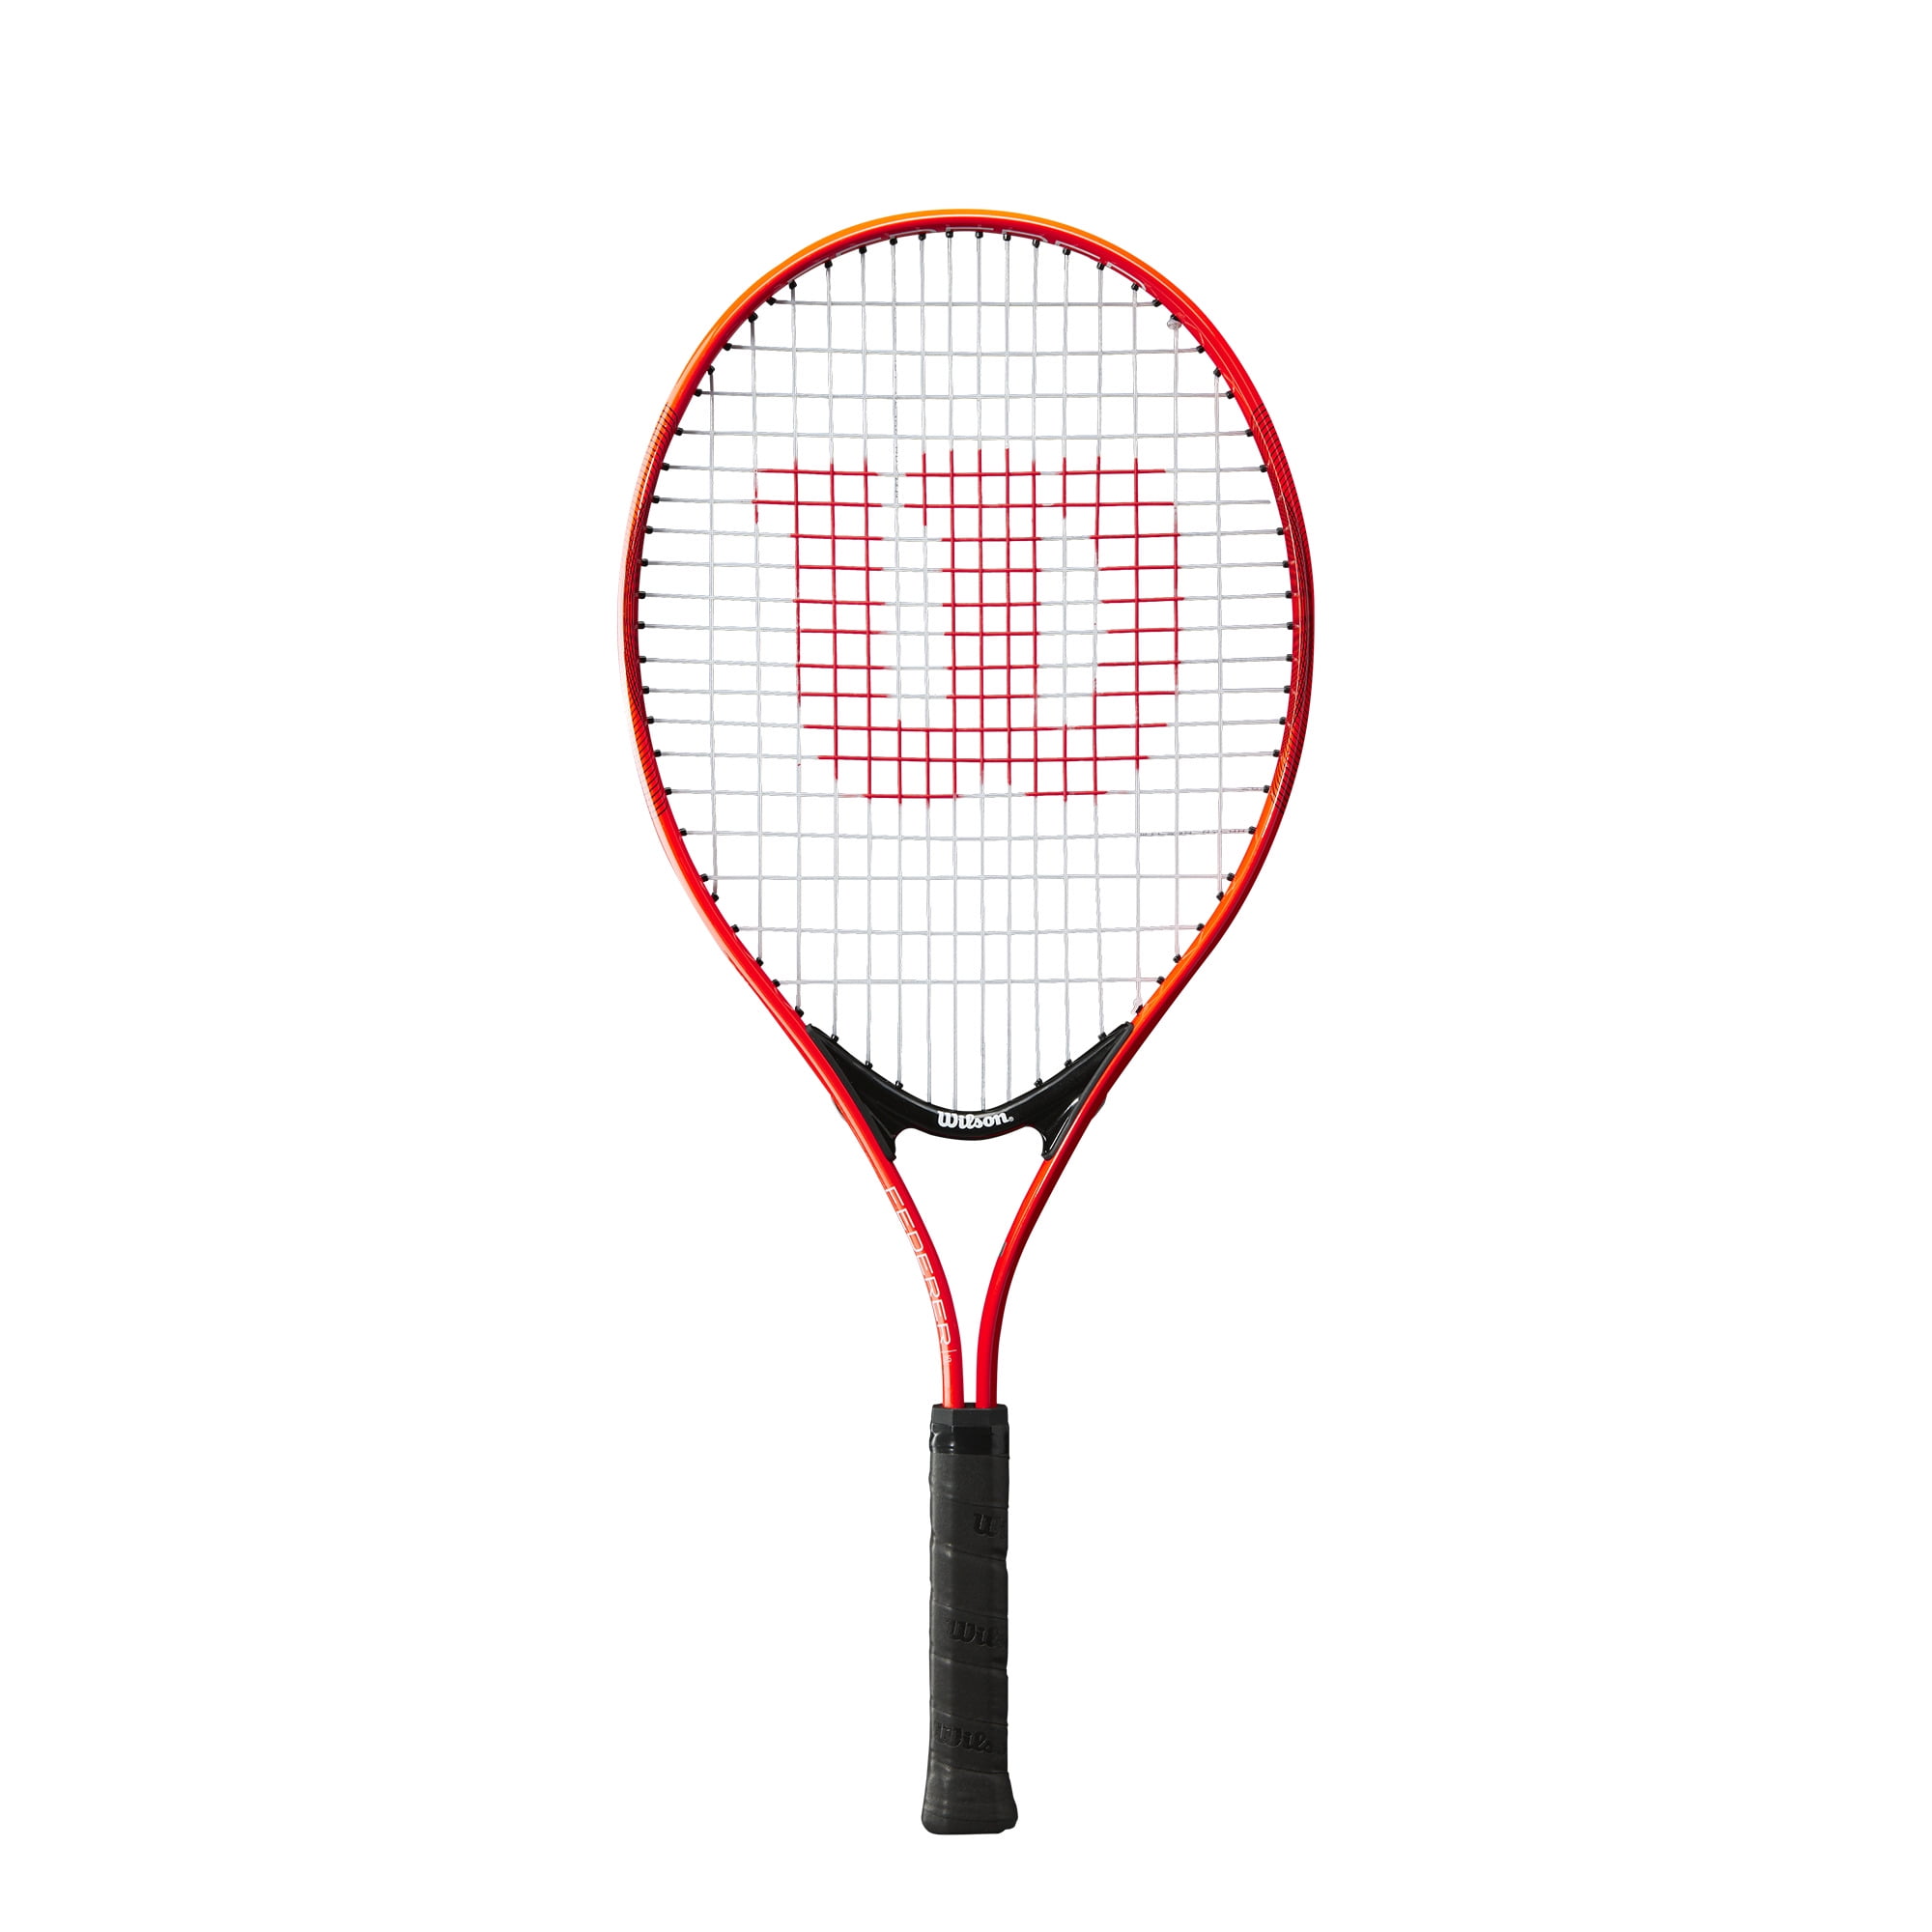 NEW Wilson Tennis Racquet Hyperion 1 Power Series 2 Racket RECREATIONAL PLAYER 